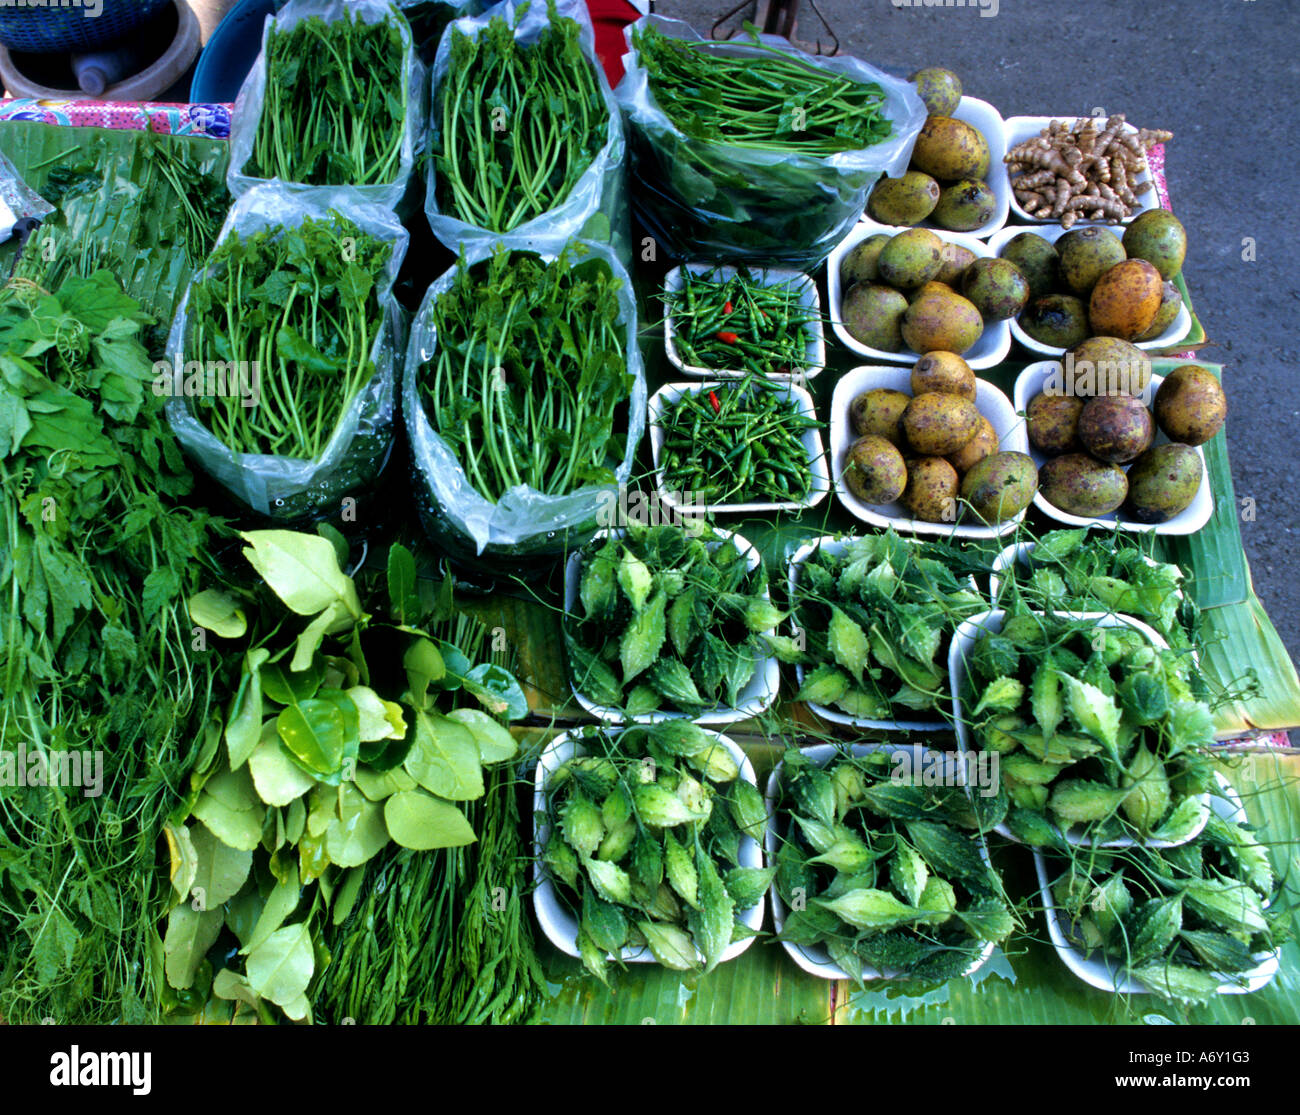 Bangkok Thailand Essen Gemüse Markt Obstladen Stockfotografie - Alamy